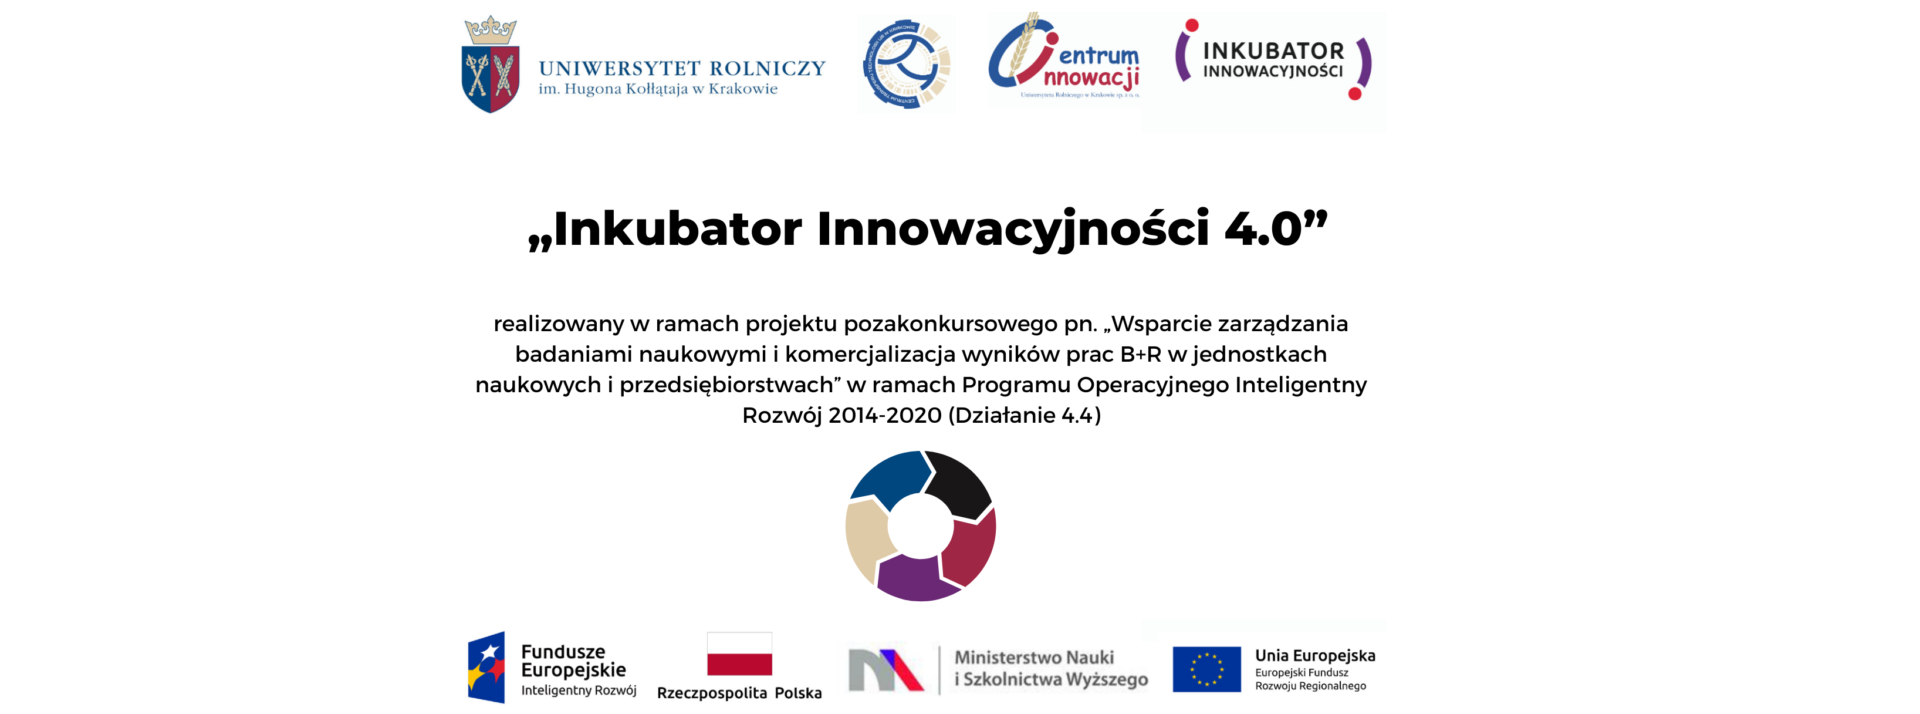 Inkubator Innowacyjności 4.0 - plakat.